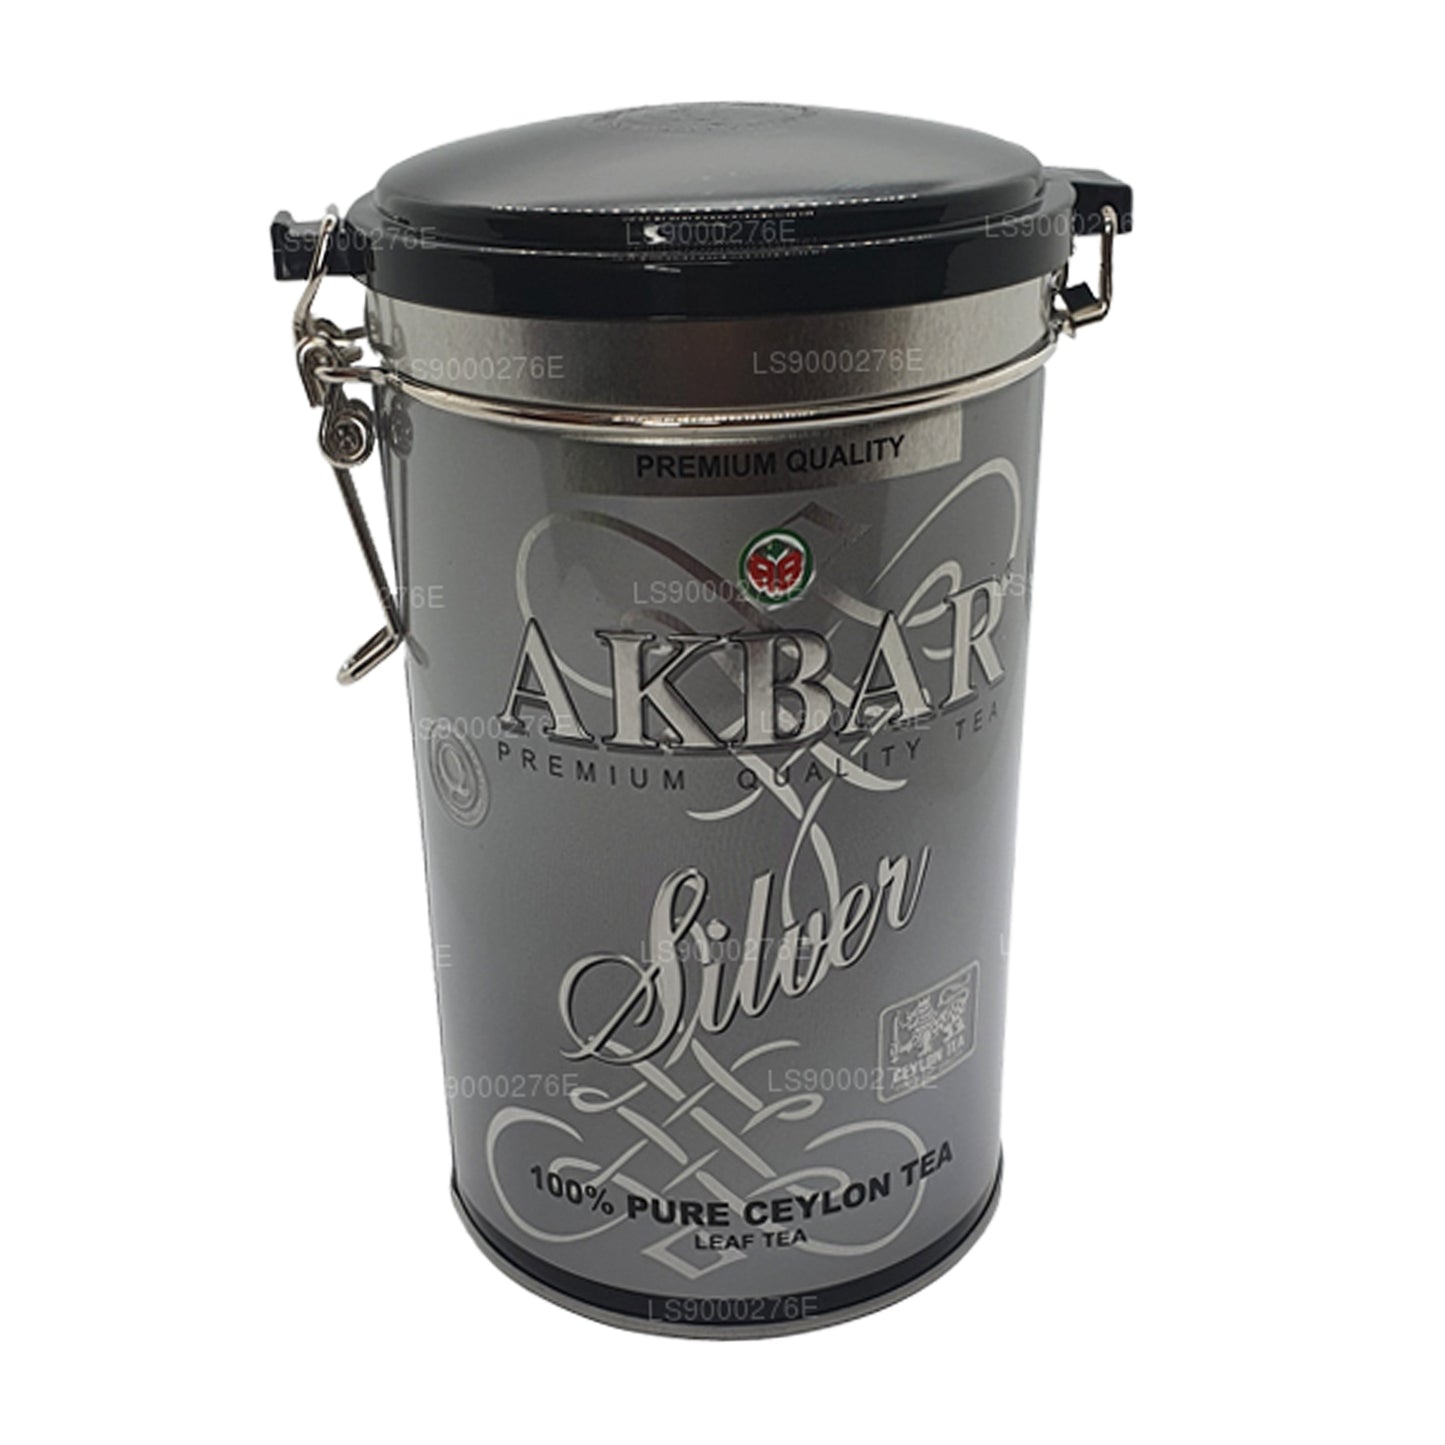 Akbar Silver Leaf Tea (150g)